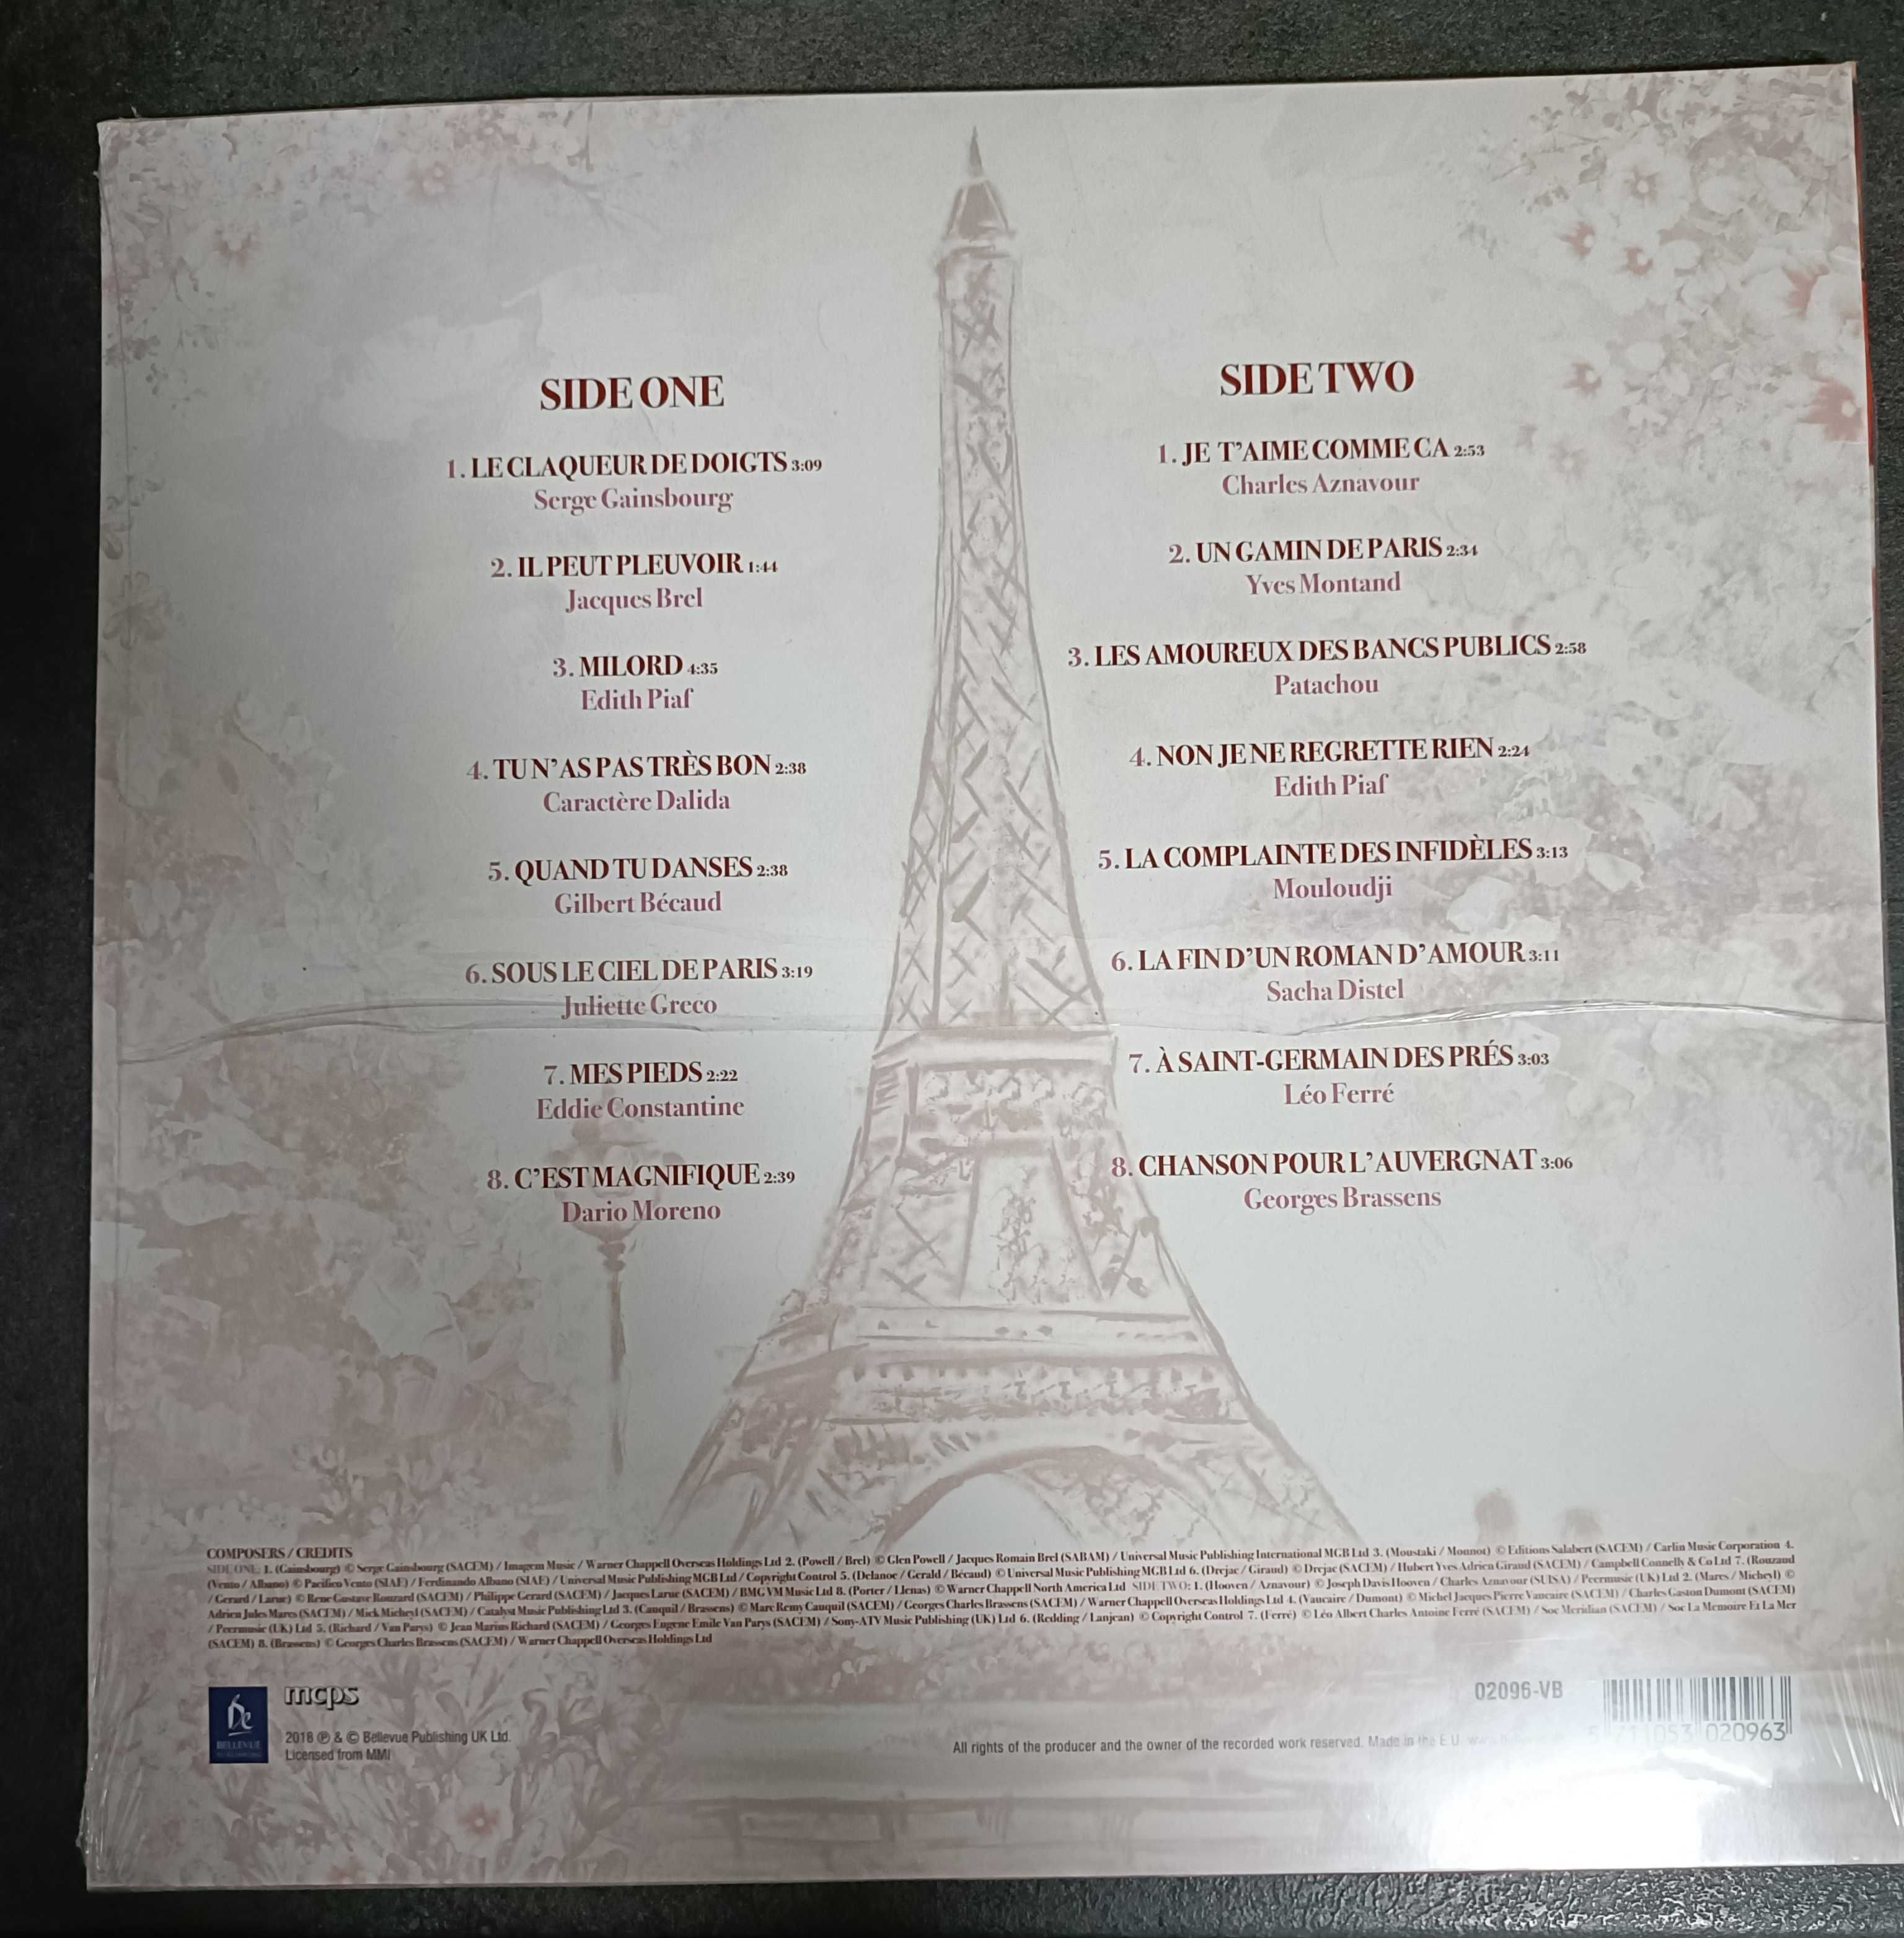 L'amour a Paris 16 chansons d'amour winyl